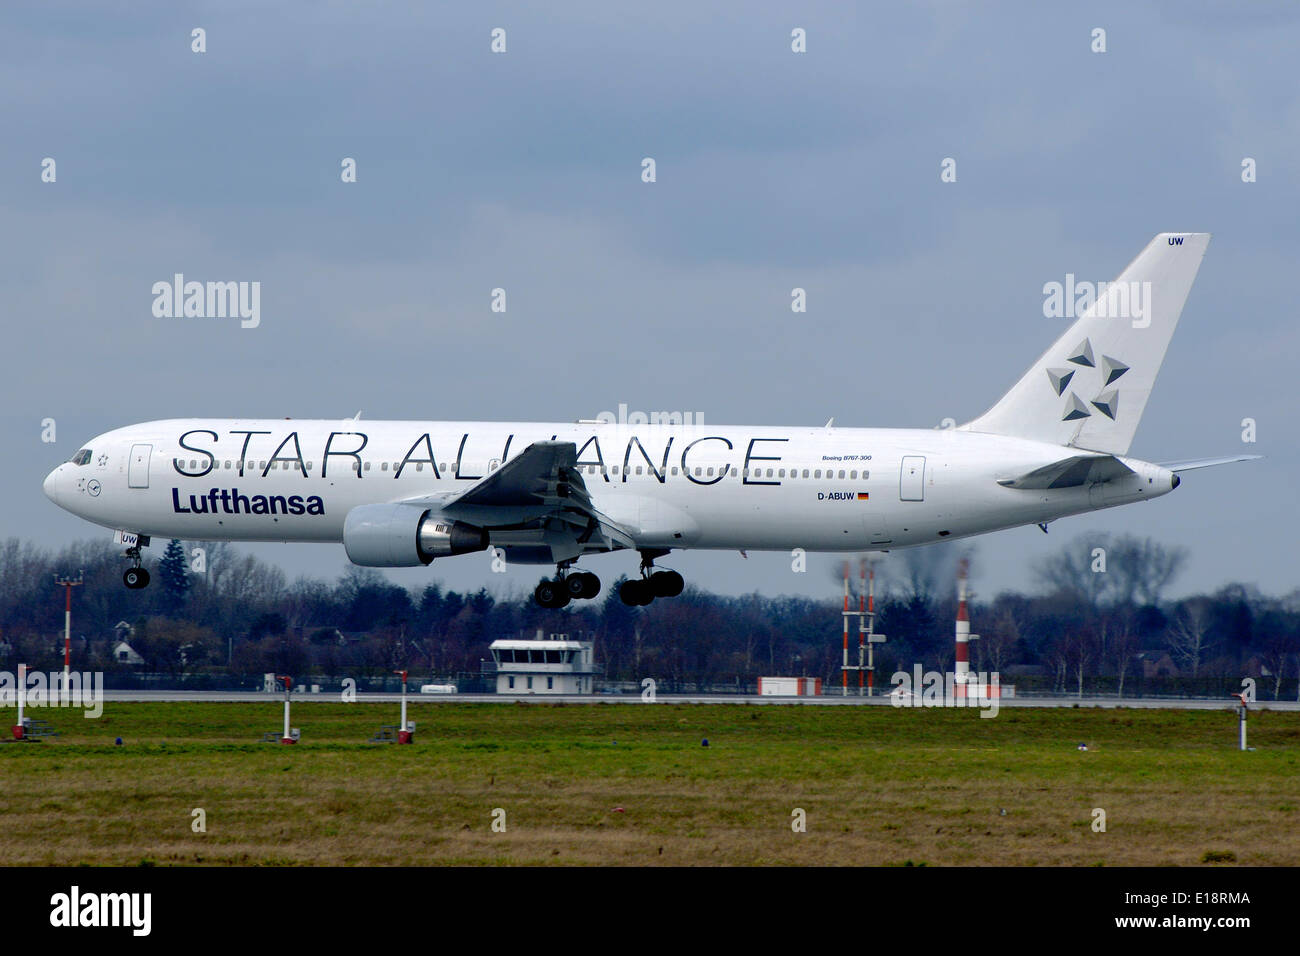 Ein Passagierflugzeug Boeing 767-300 der Deutschen Lufthansa landet am Flughafen Düsseldorf-Lohausen, sportliche Star Alliance Förderung Livree. Stockfoto